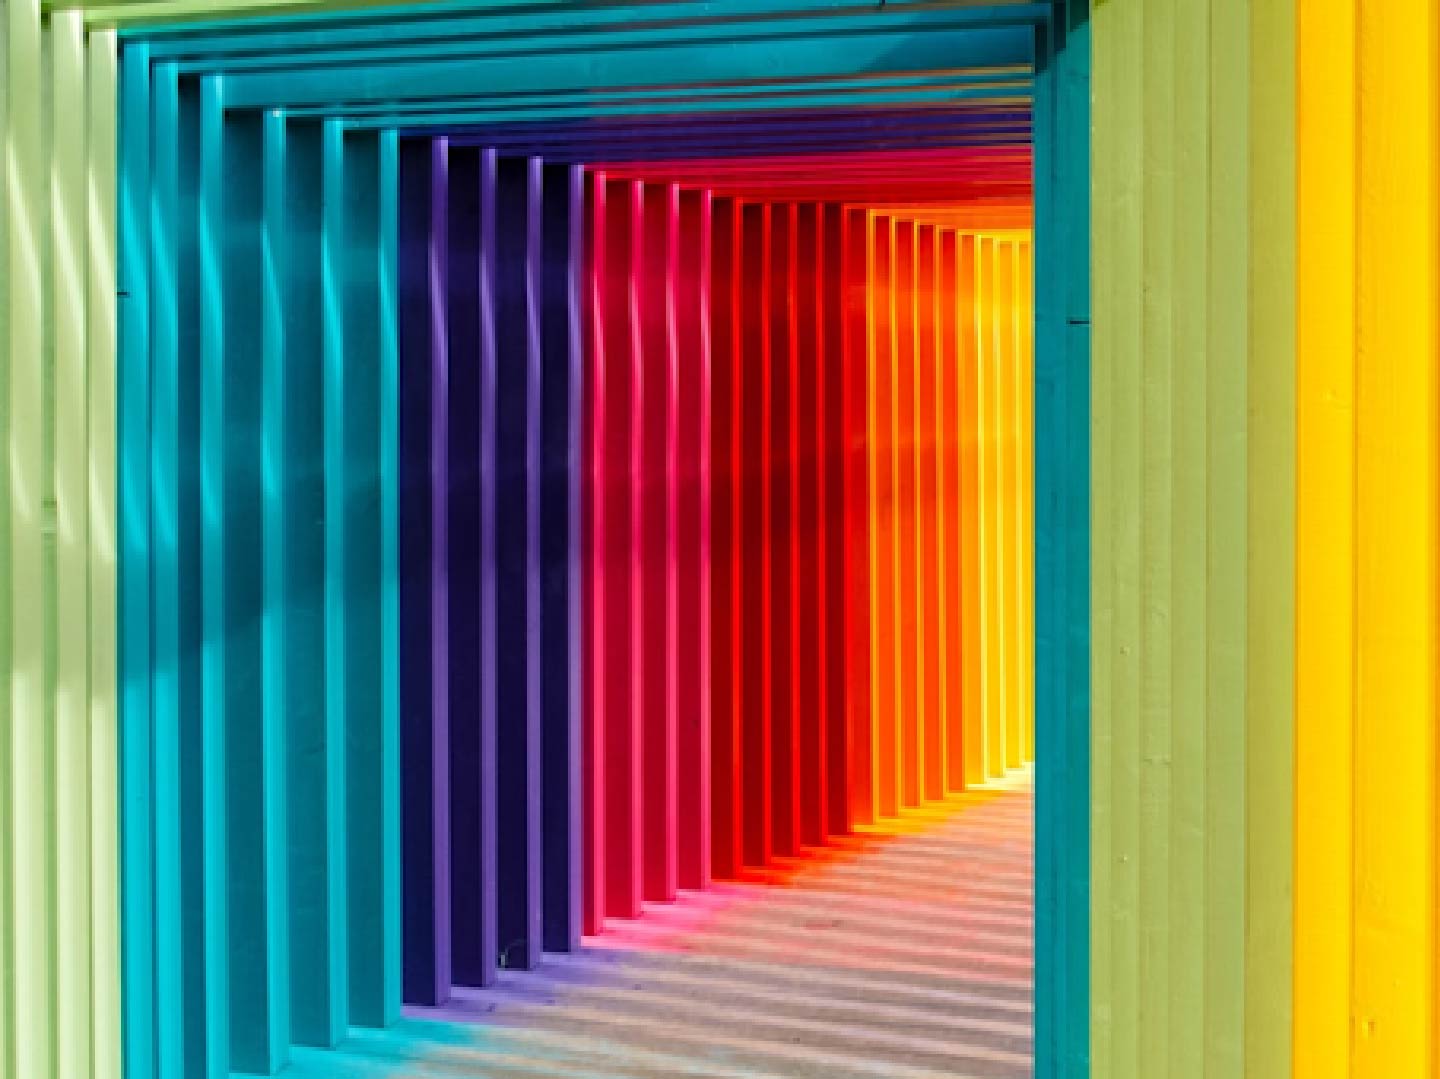 Tunel colores arcoiris